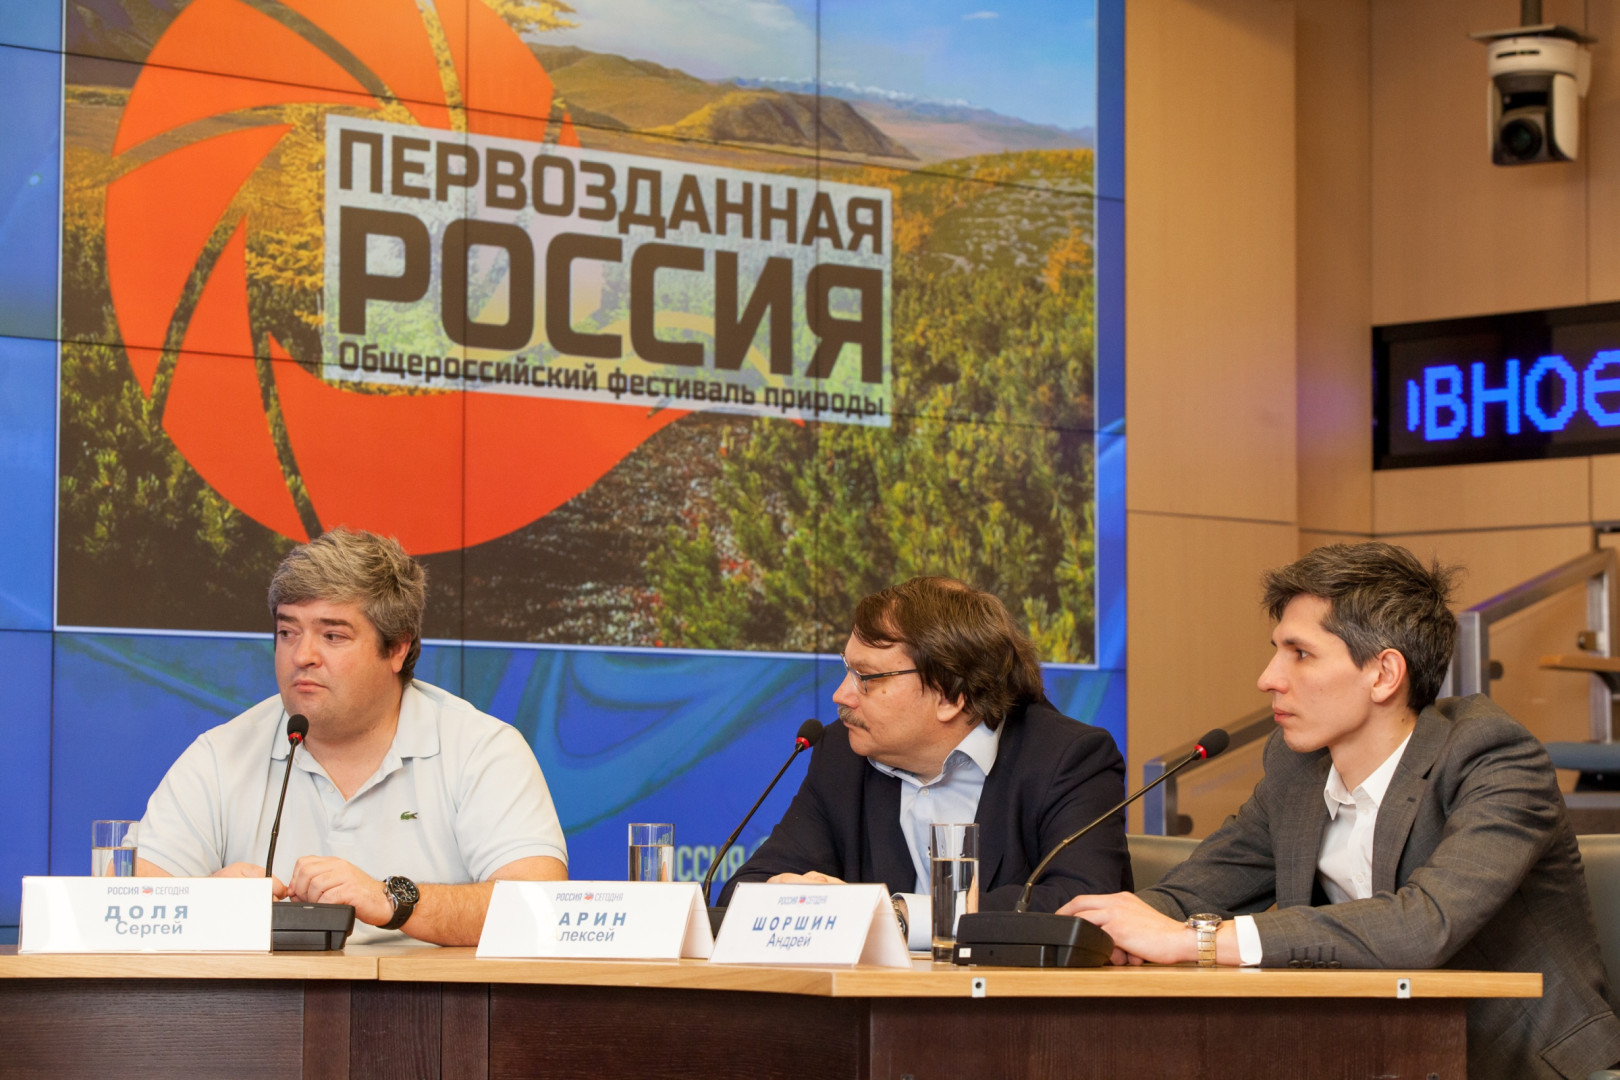 Пресс-конференция, посвященная предстоящему фестивалю "Первозданная Россия"